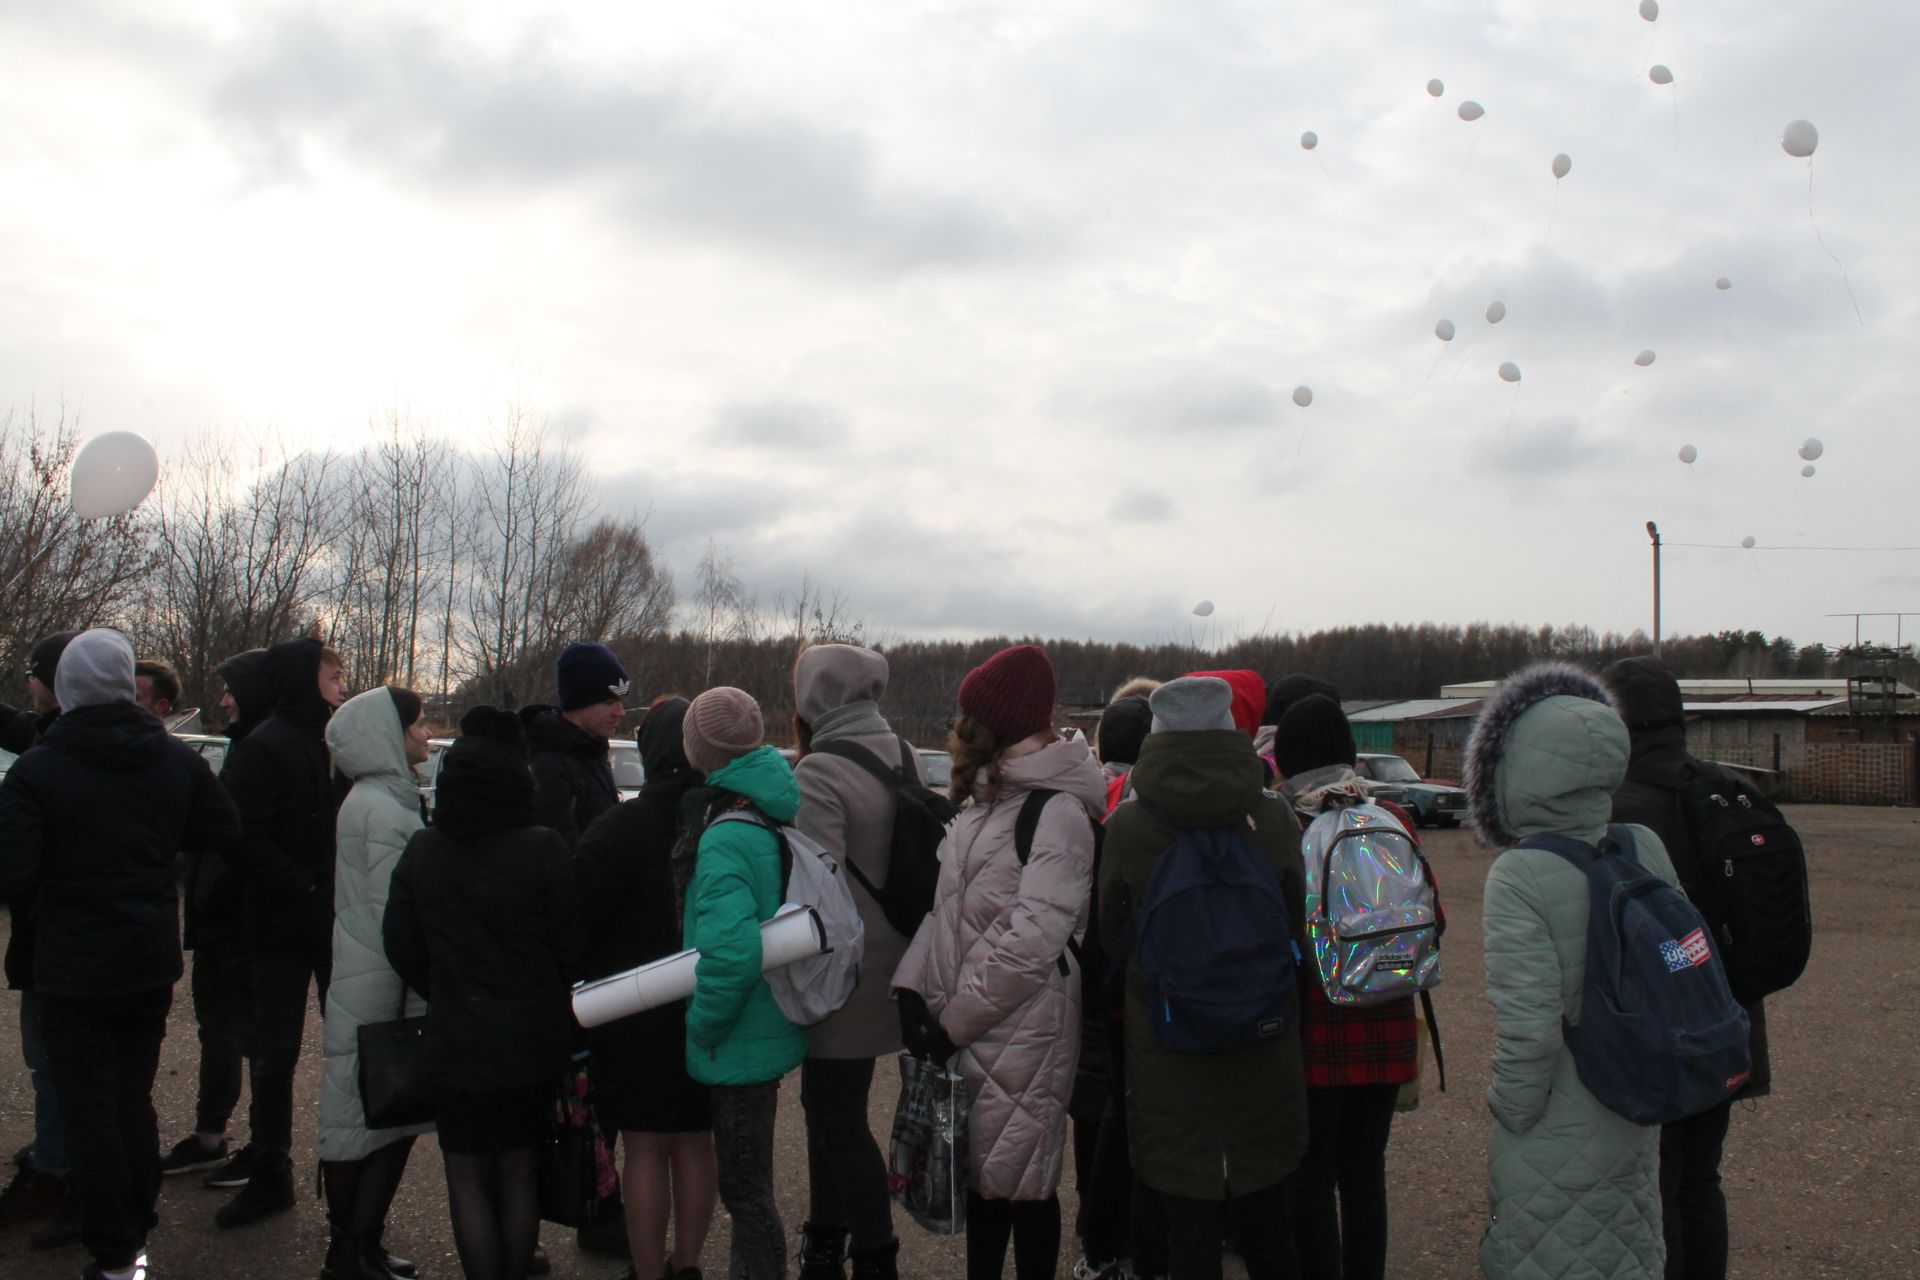 Цените жизнь: в Чистополе был организован митинг в память о жертвах ДТП